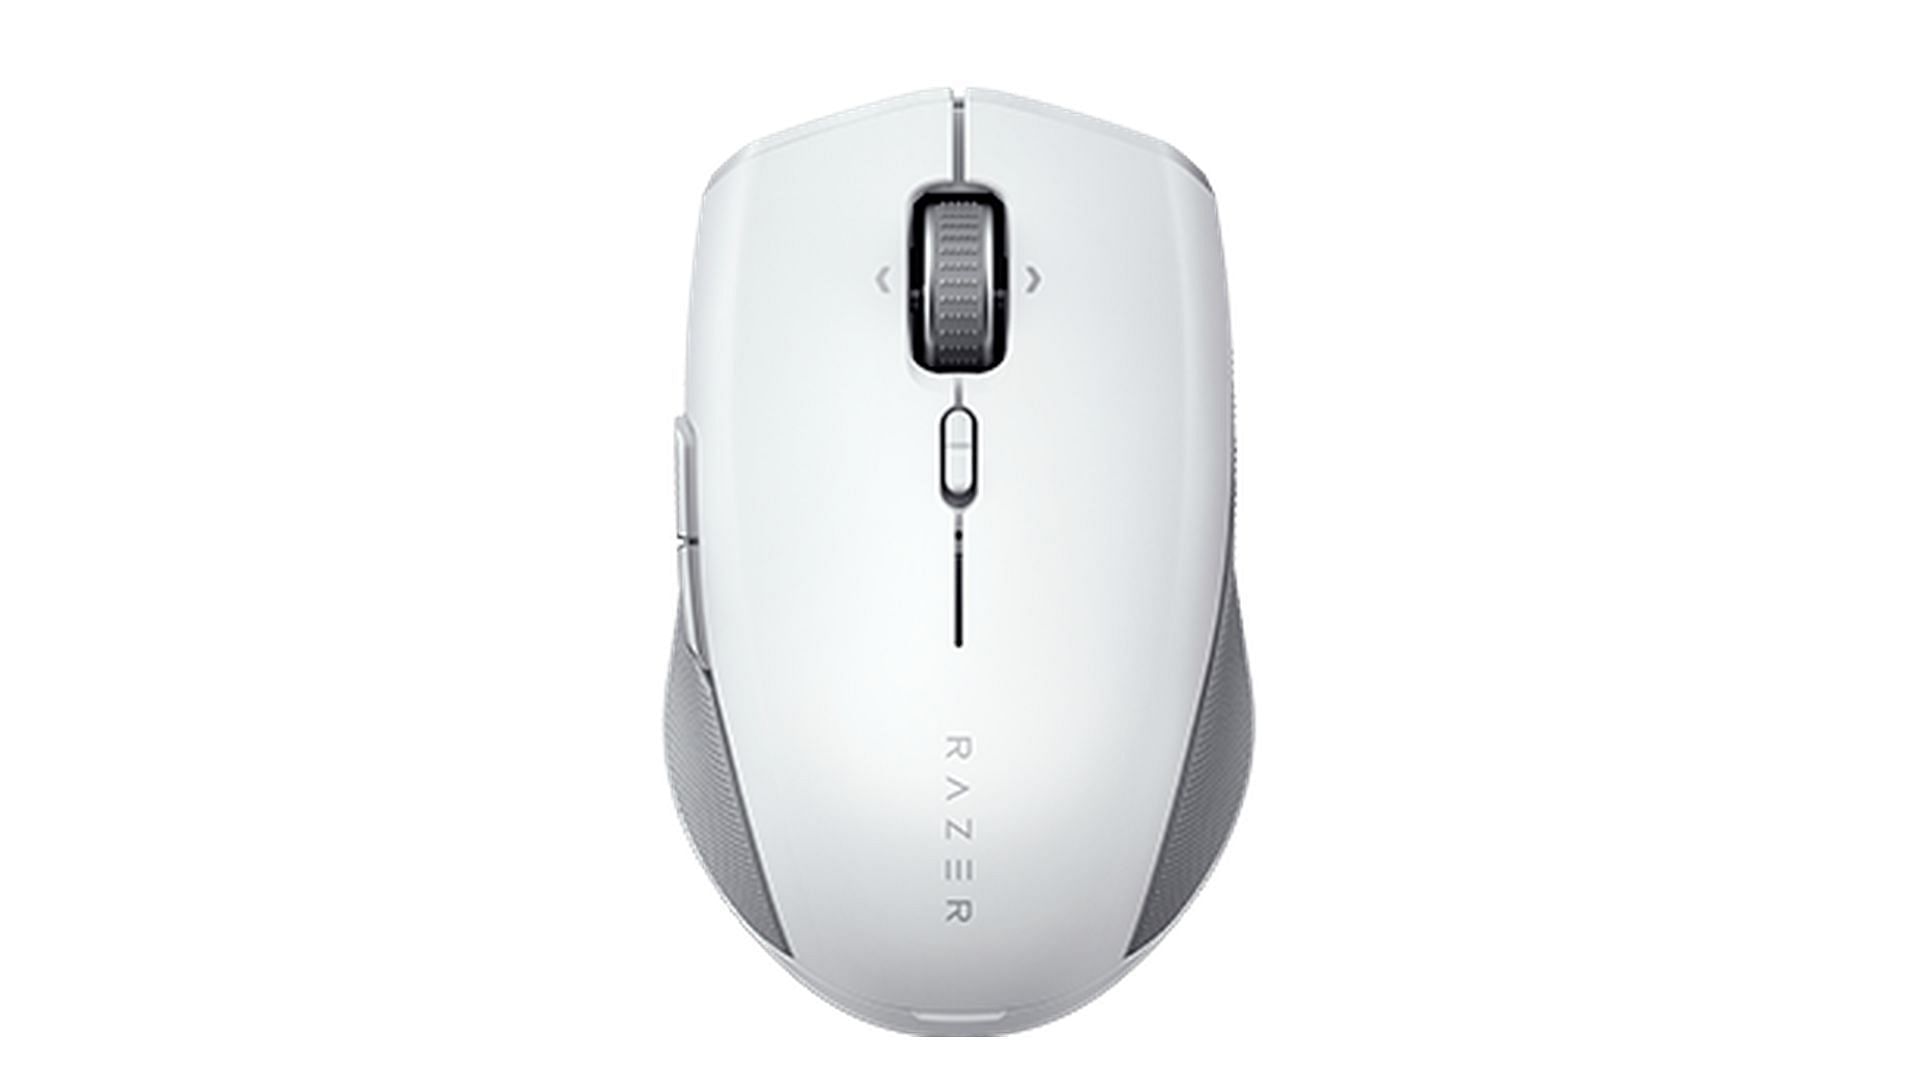 Razer Pro Click - best ergonomic mice (Image via Razer)